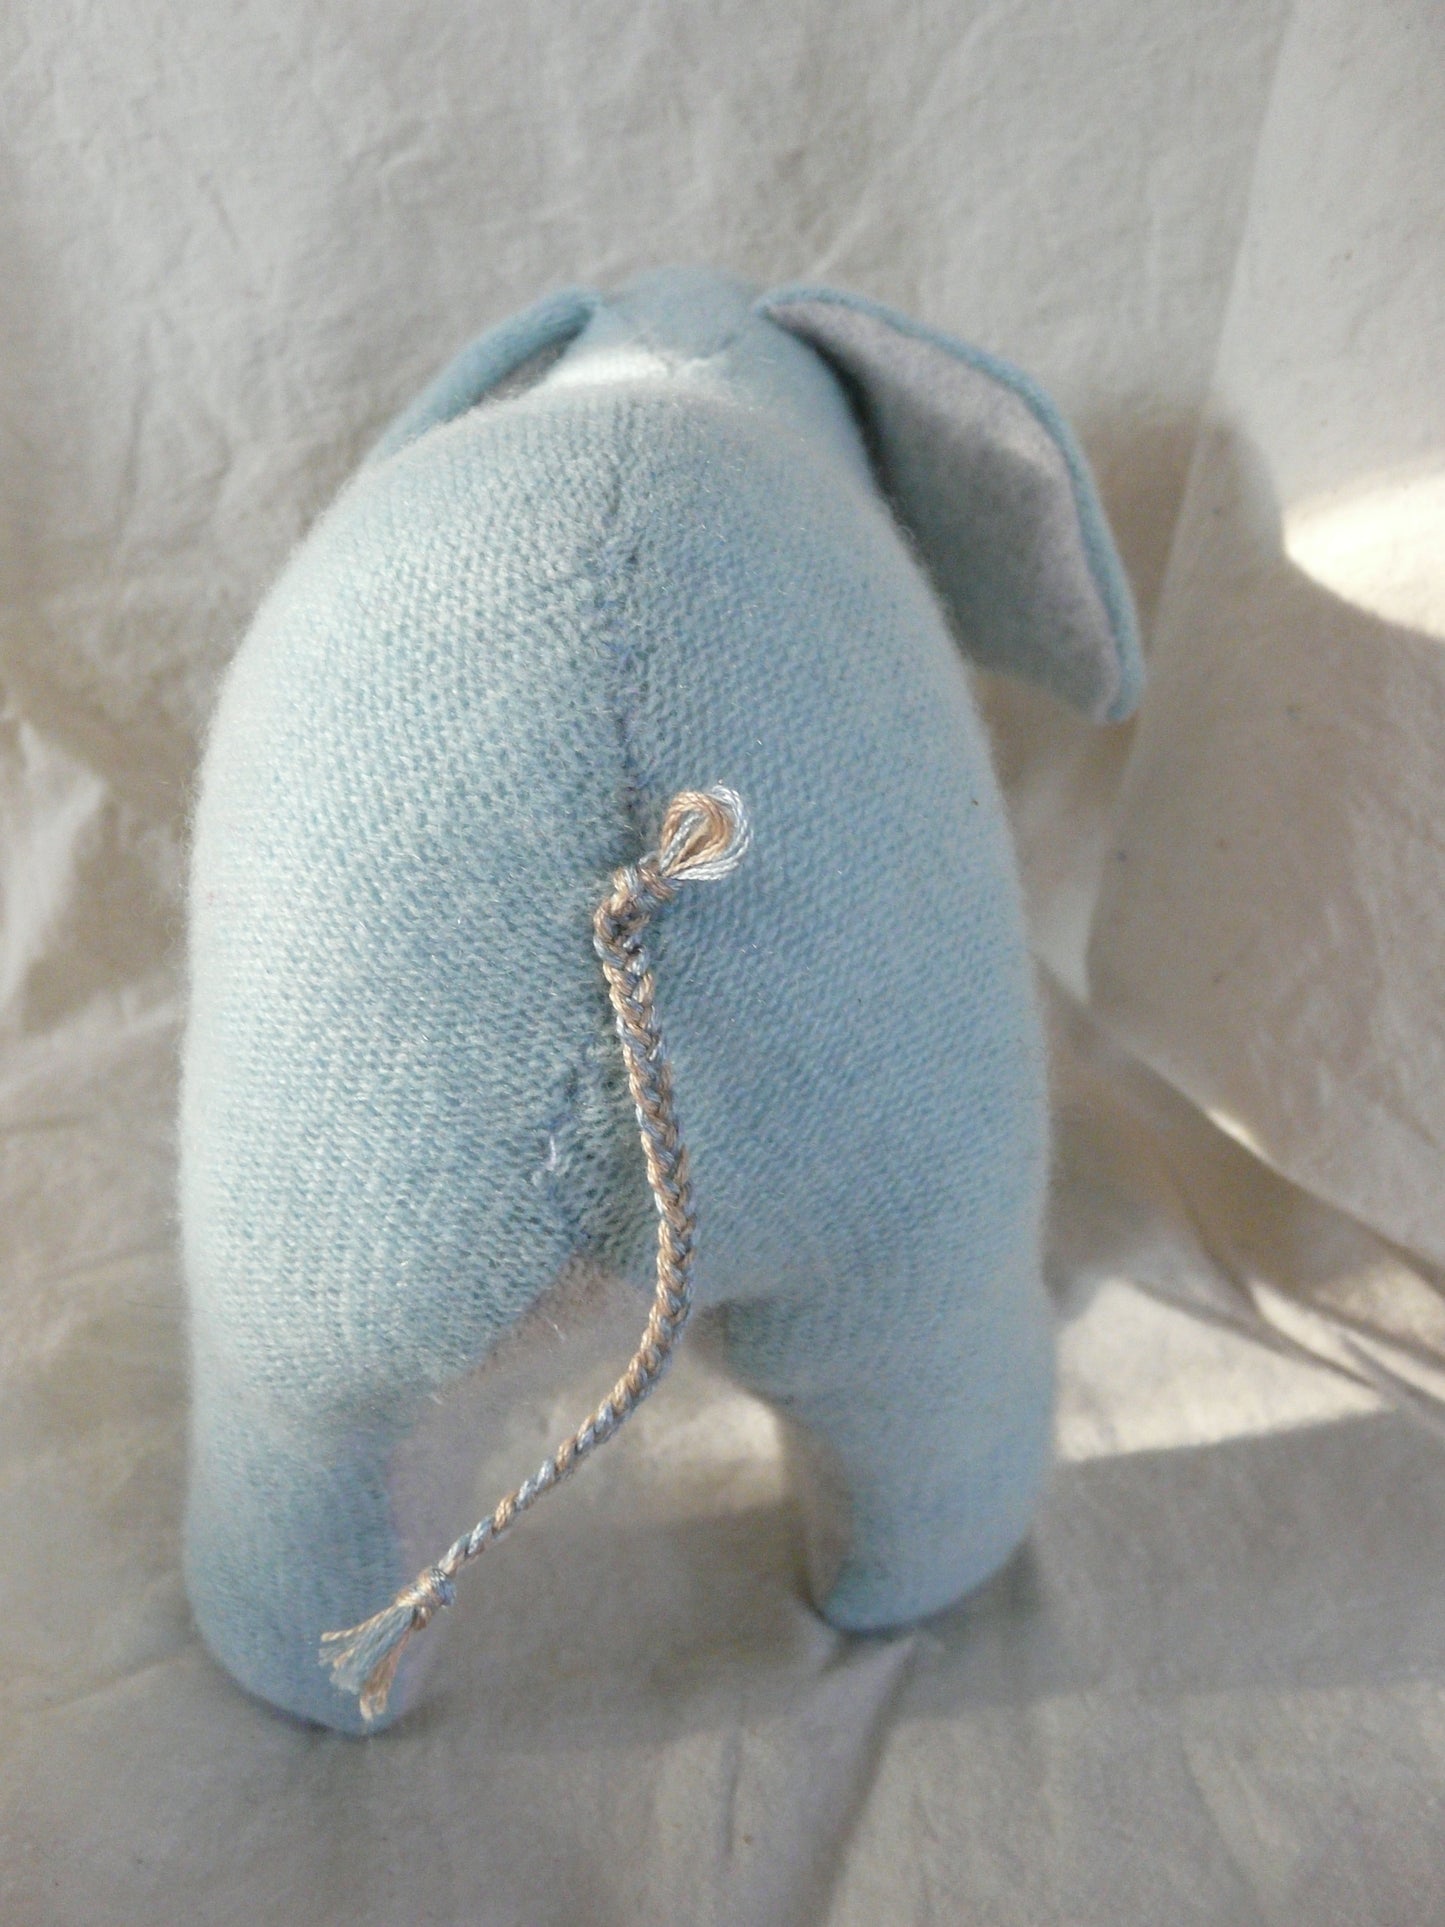 Stuffed Elephant